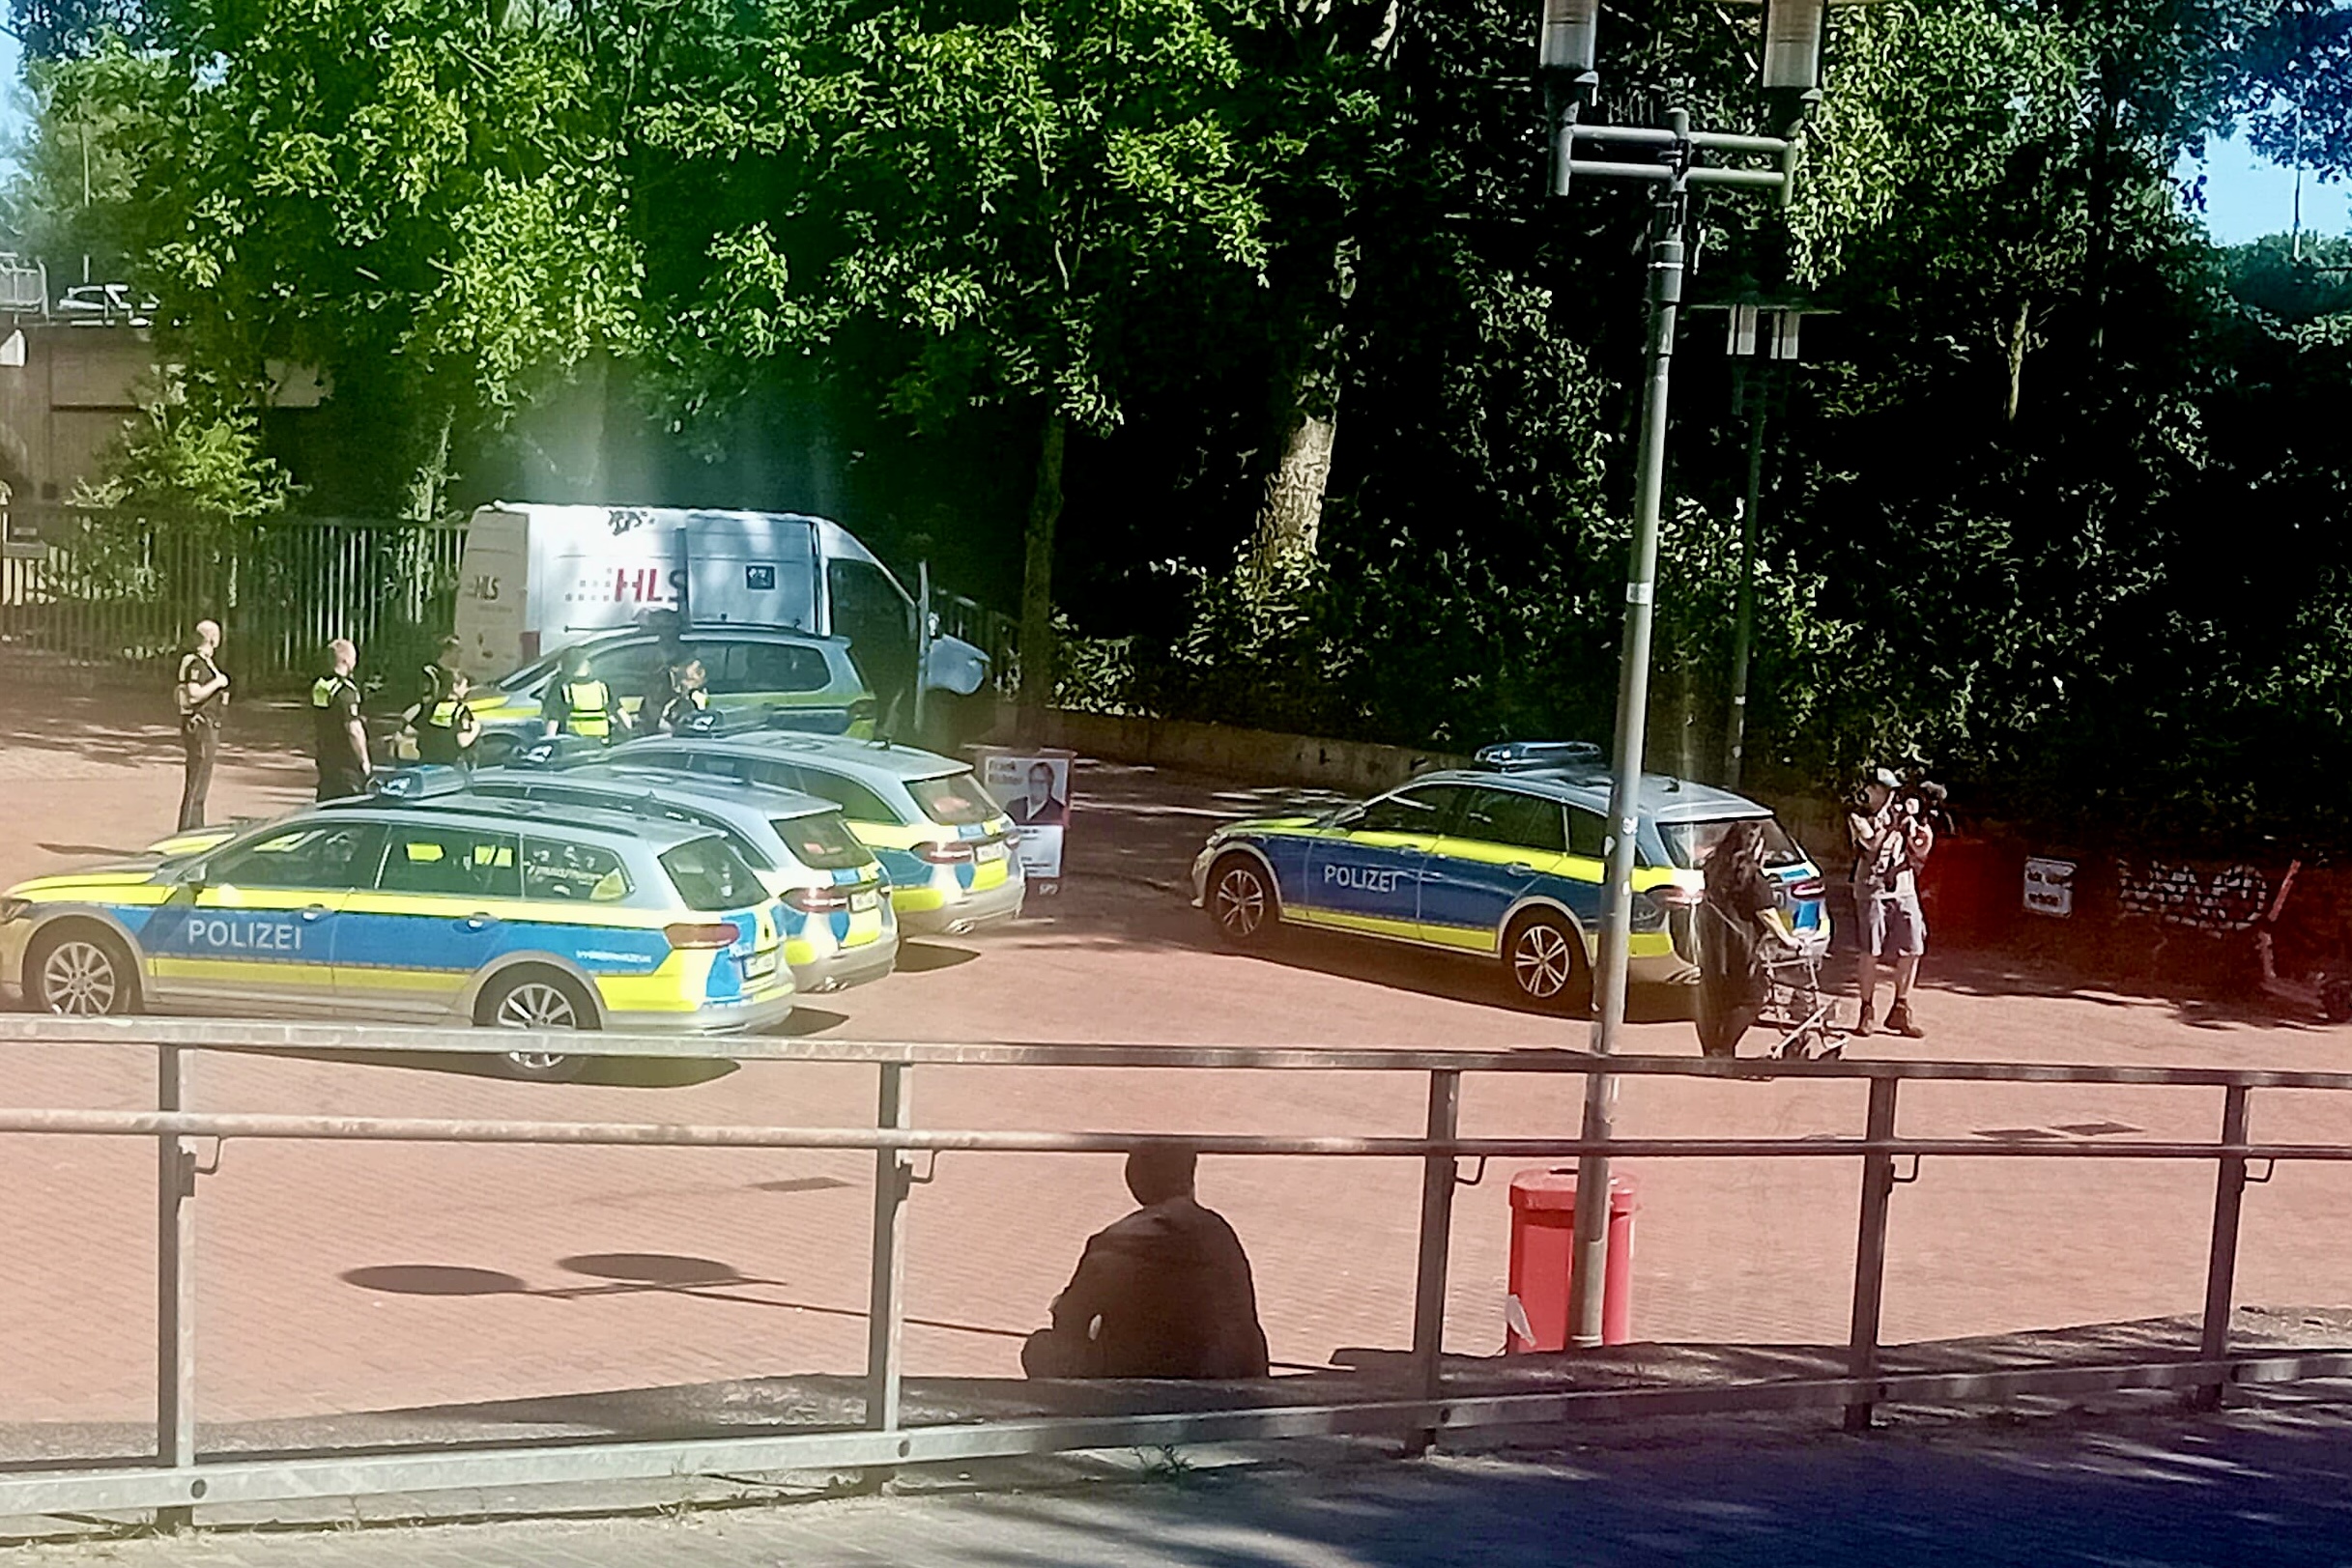 Geldtransporter defekt. Polizei muss mit mehreren Streifenwagen in Harburg anrücken um das Umladen abzusichern.